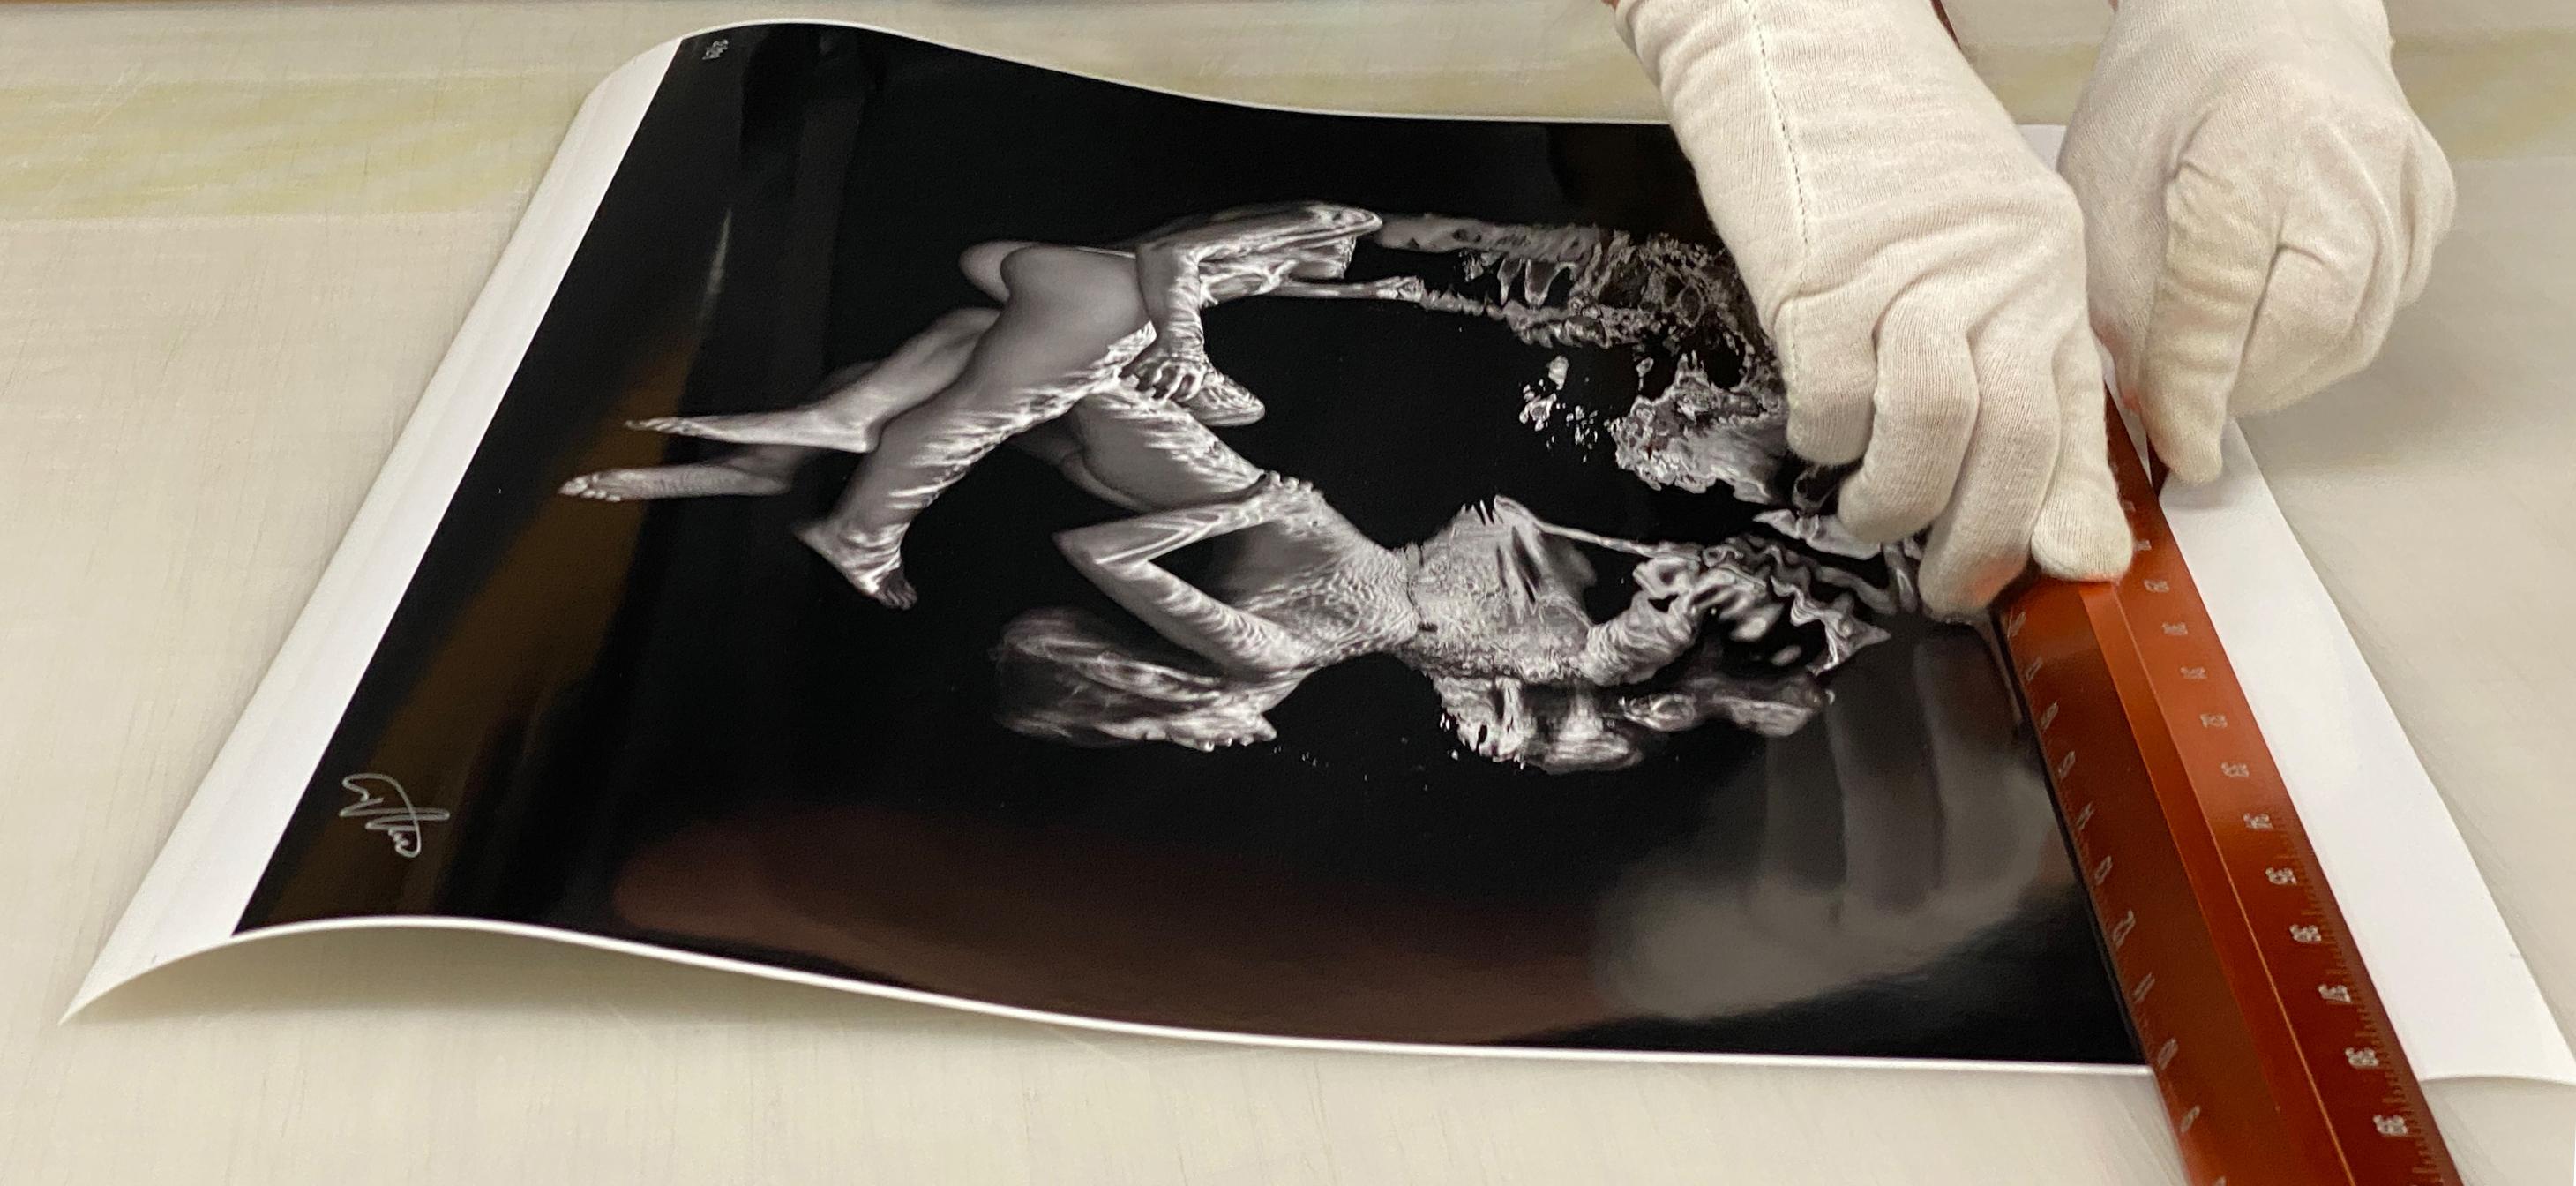 Double Trouble - Unterwasser-Schwarz-Weiß-Nacktfotografie in Schwarz-Weiß - Papierdruck 17 x 24